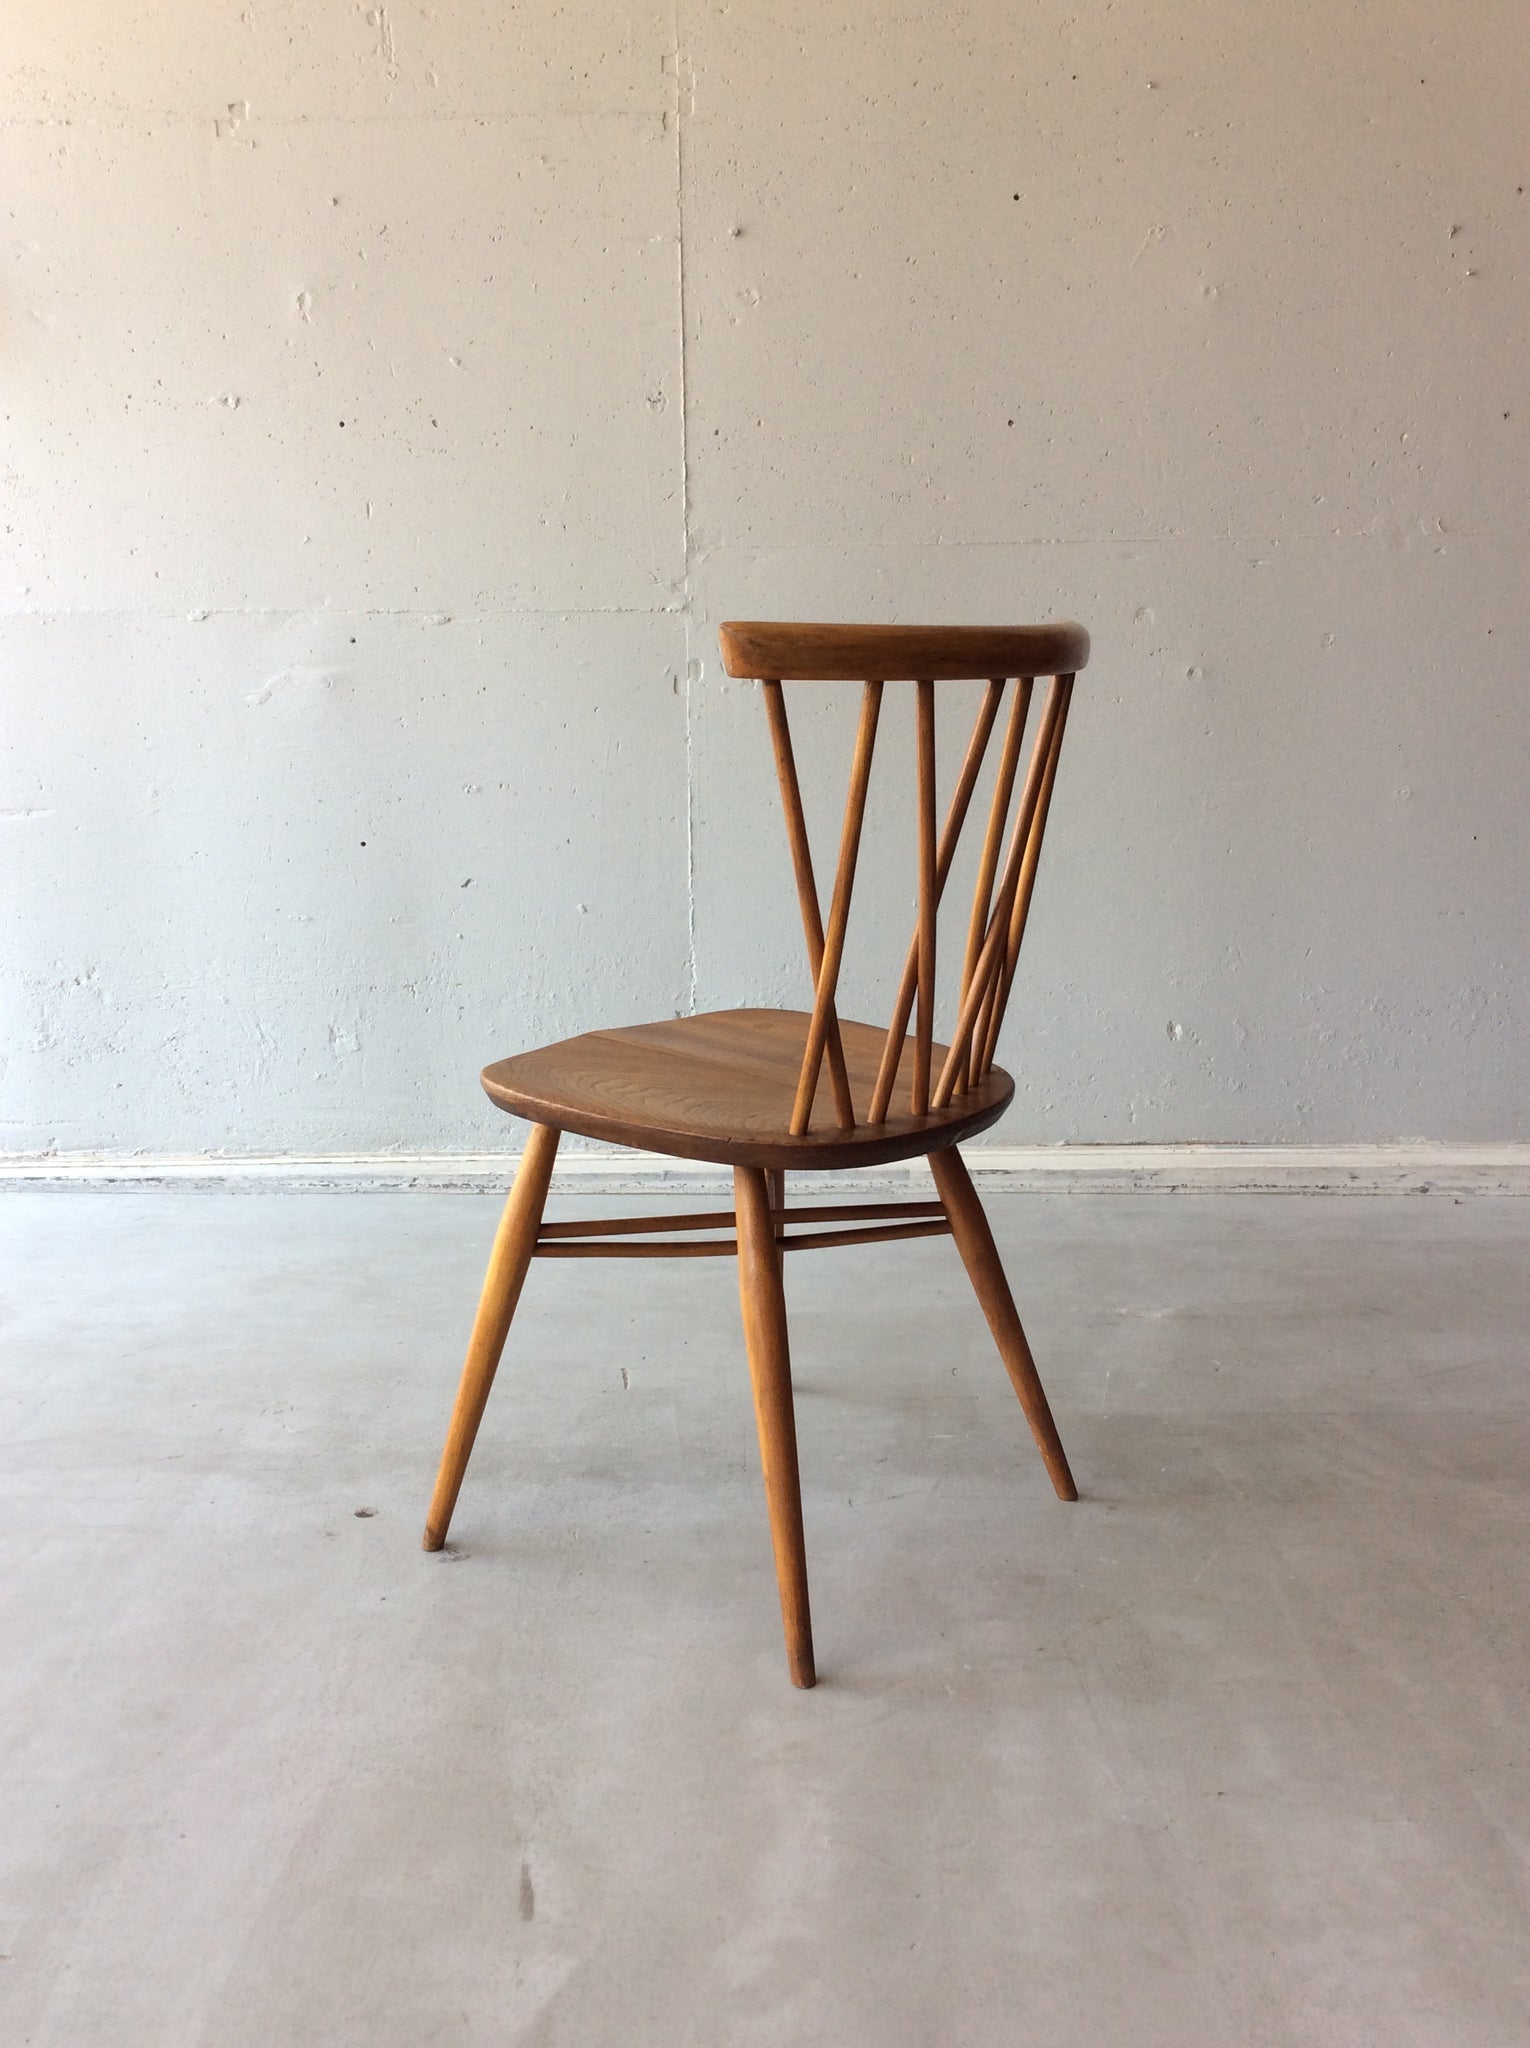 アーコール ウィンザー クロスバック チェア / ercol windsor latticed chair '376'  #0162